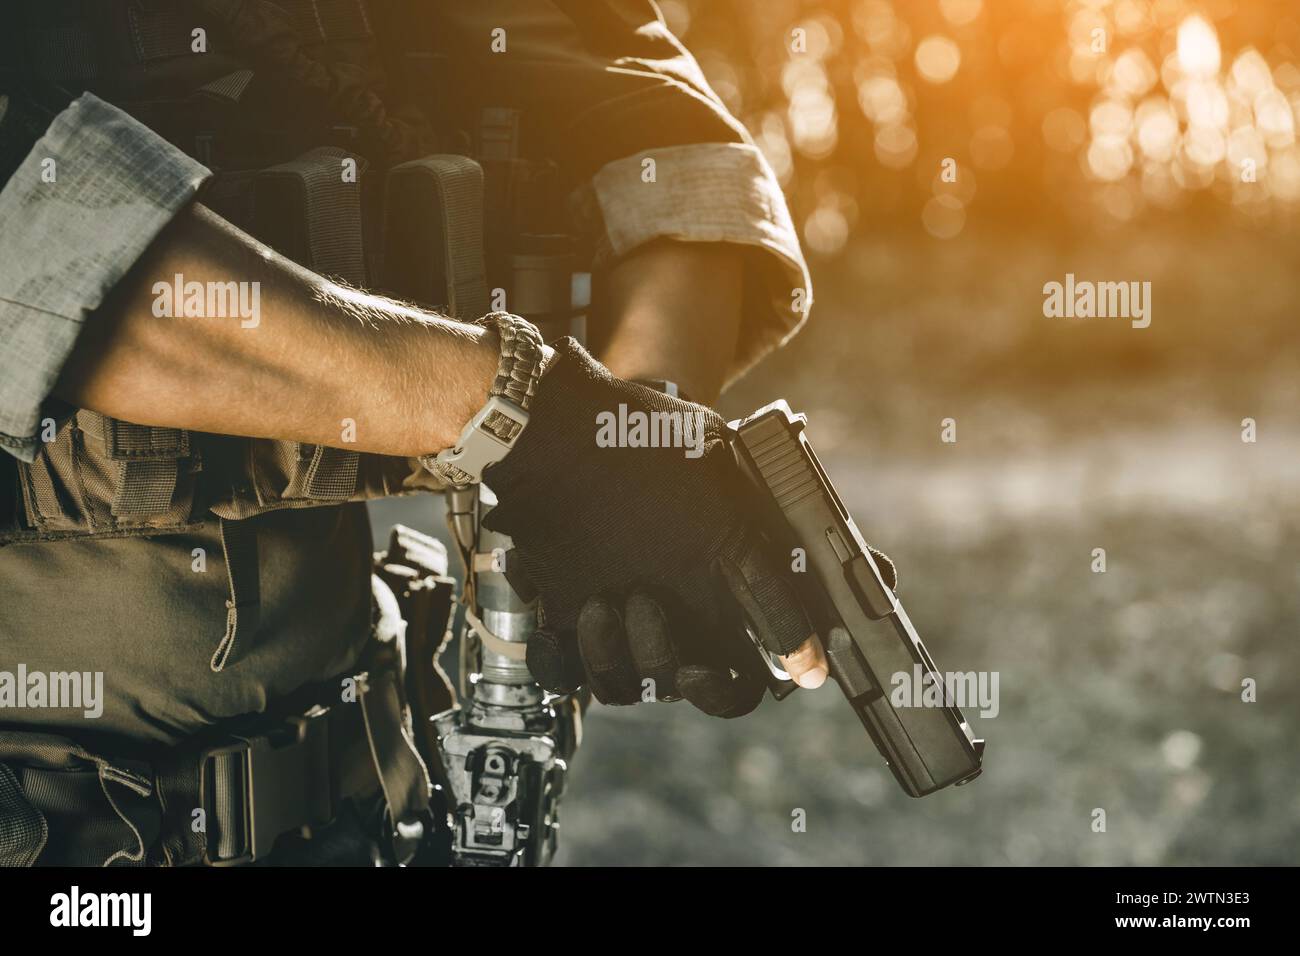 Der Soldat bei der Ausführung von Aufgaben in Tarnhülle und Schutzhandschuhen mit Pistole. Kriegsgebiet. Stockfoto